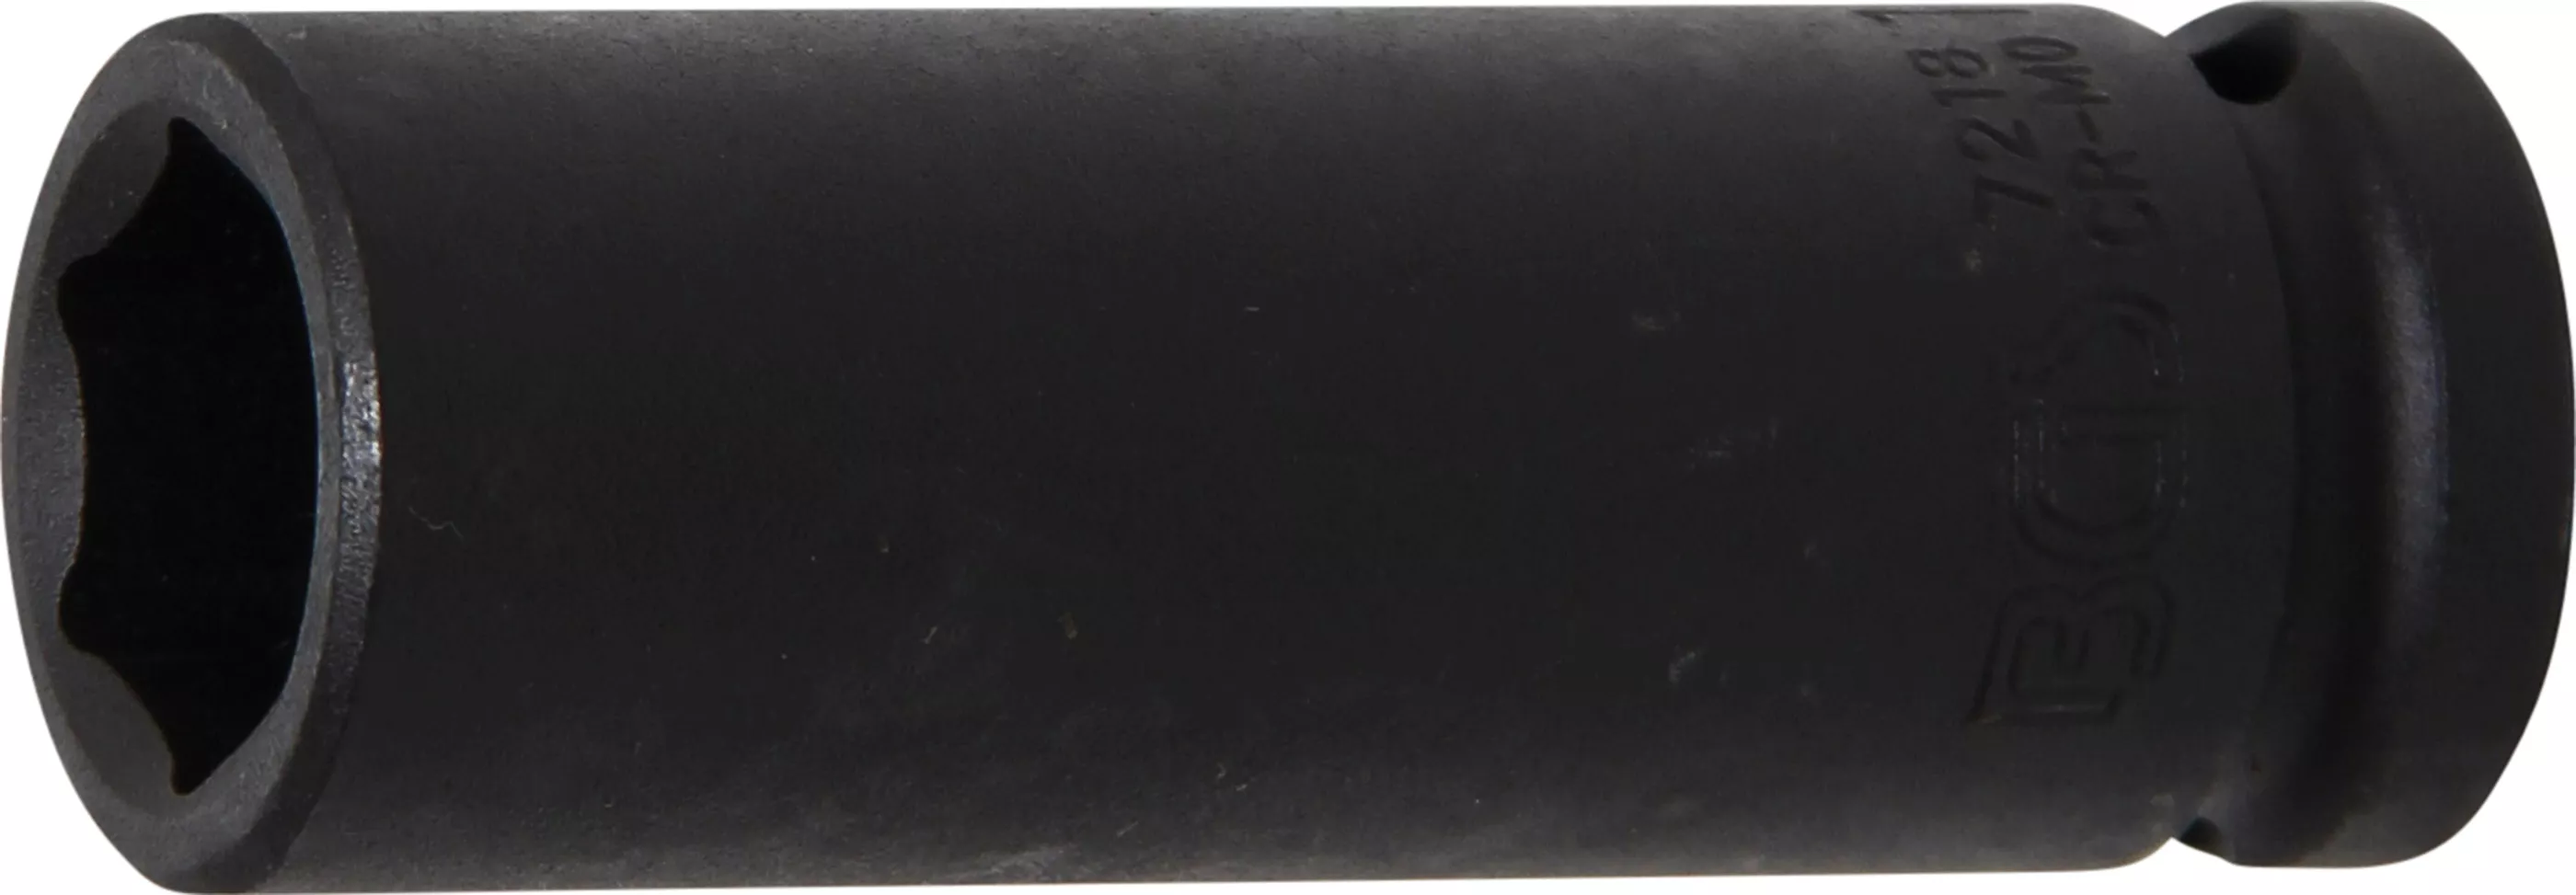 Rázový nástrčný klíč, šestihranný, 1/2", 18 mm - B7218